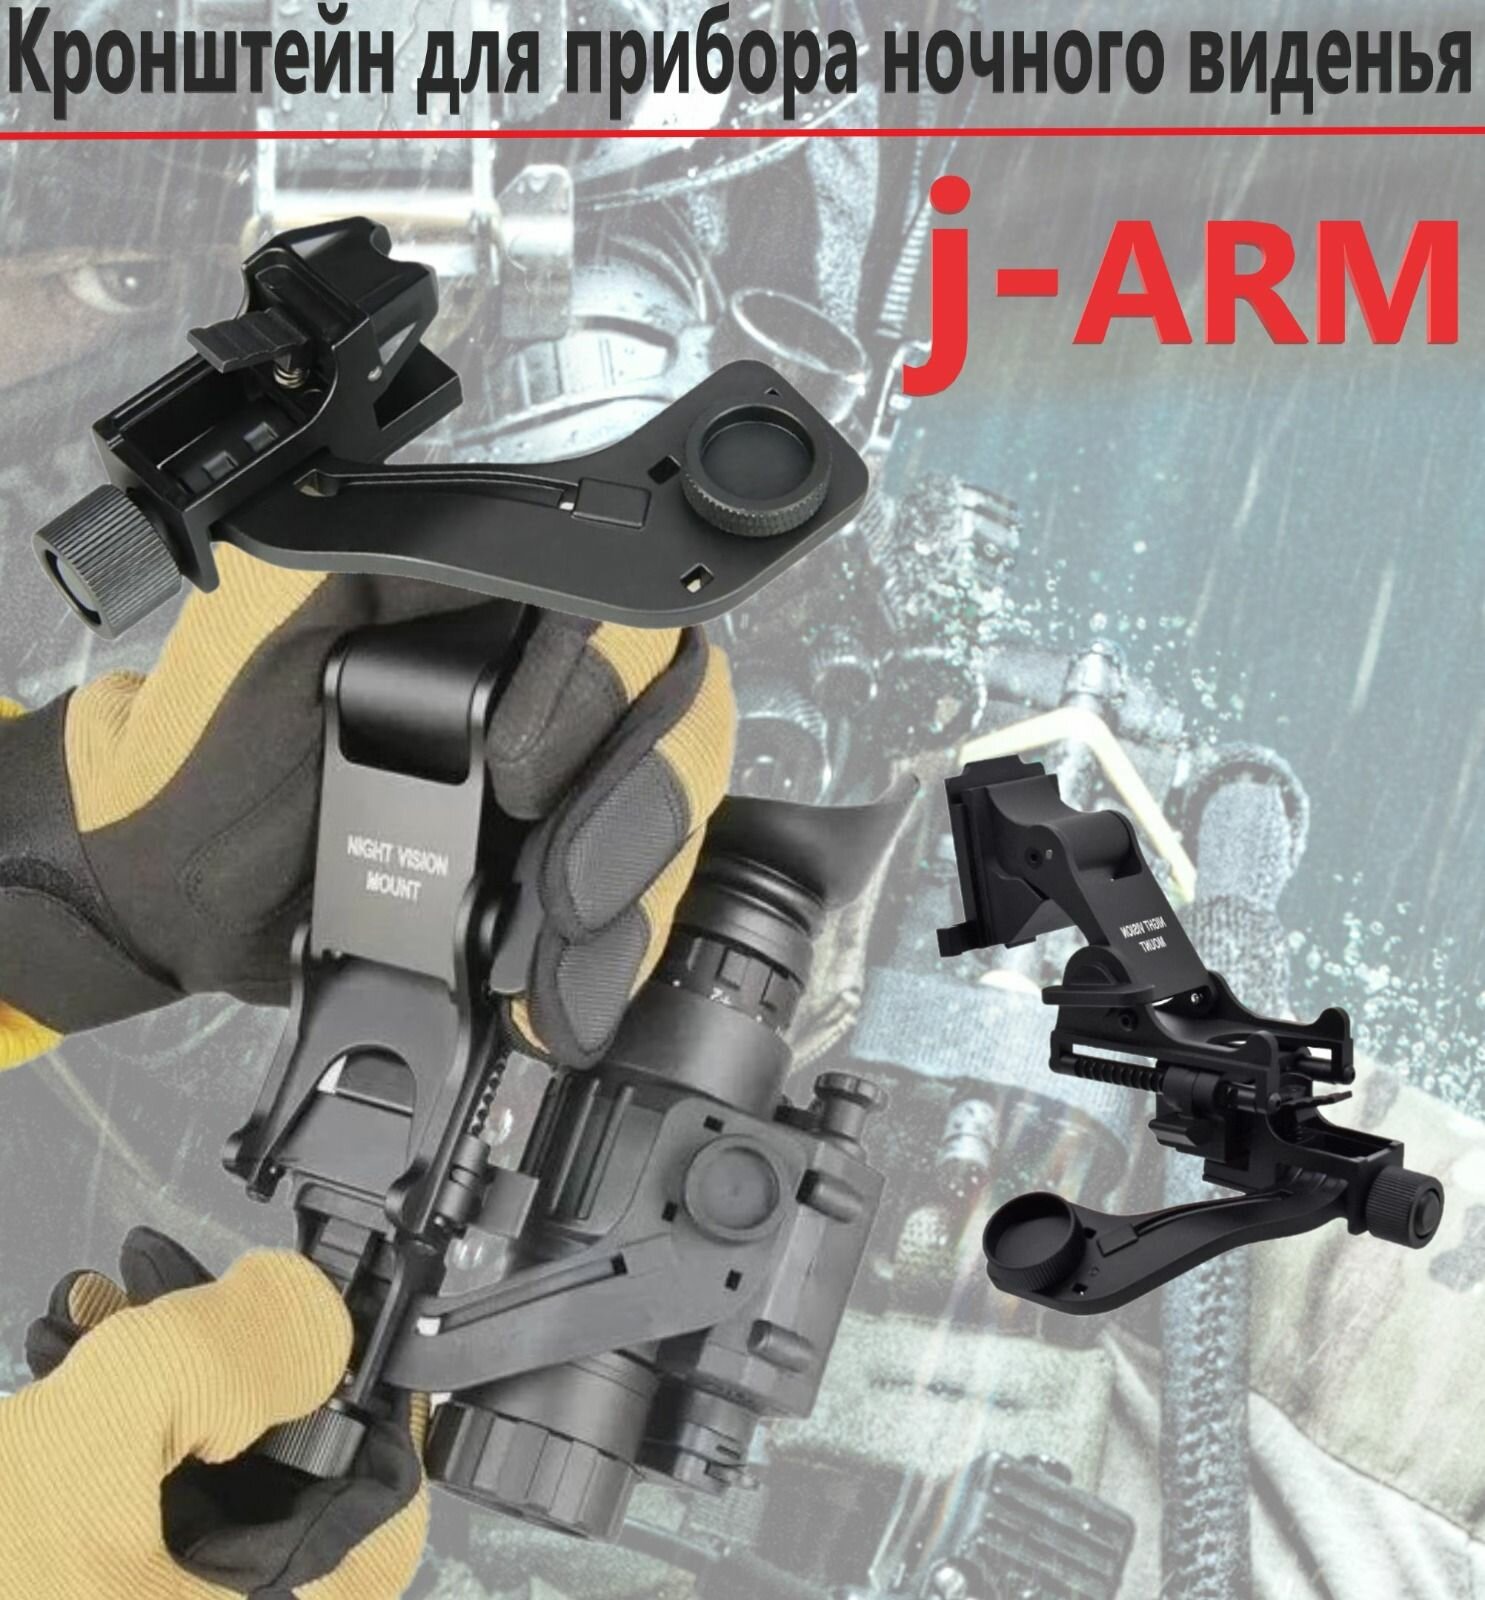 Кронштейн для крепления пнв J-arm пластик/ адаптер J-arm для ПНВ PVS-14